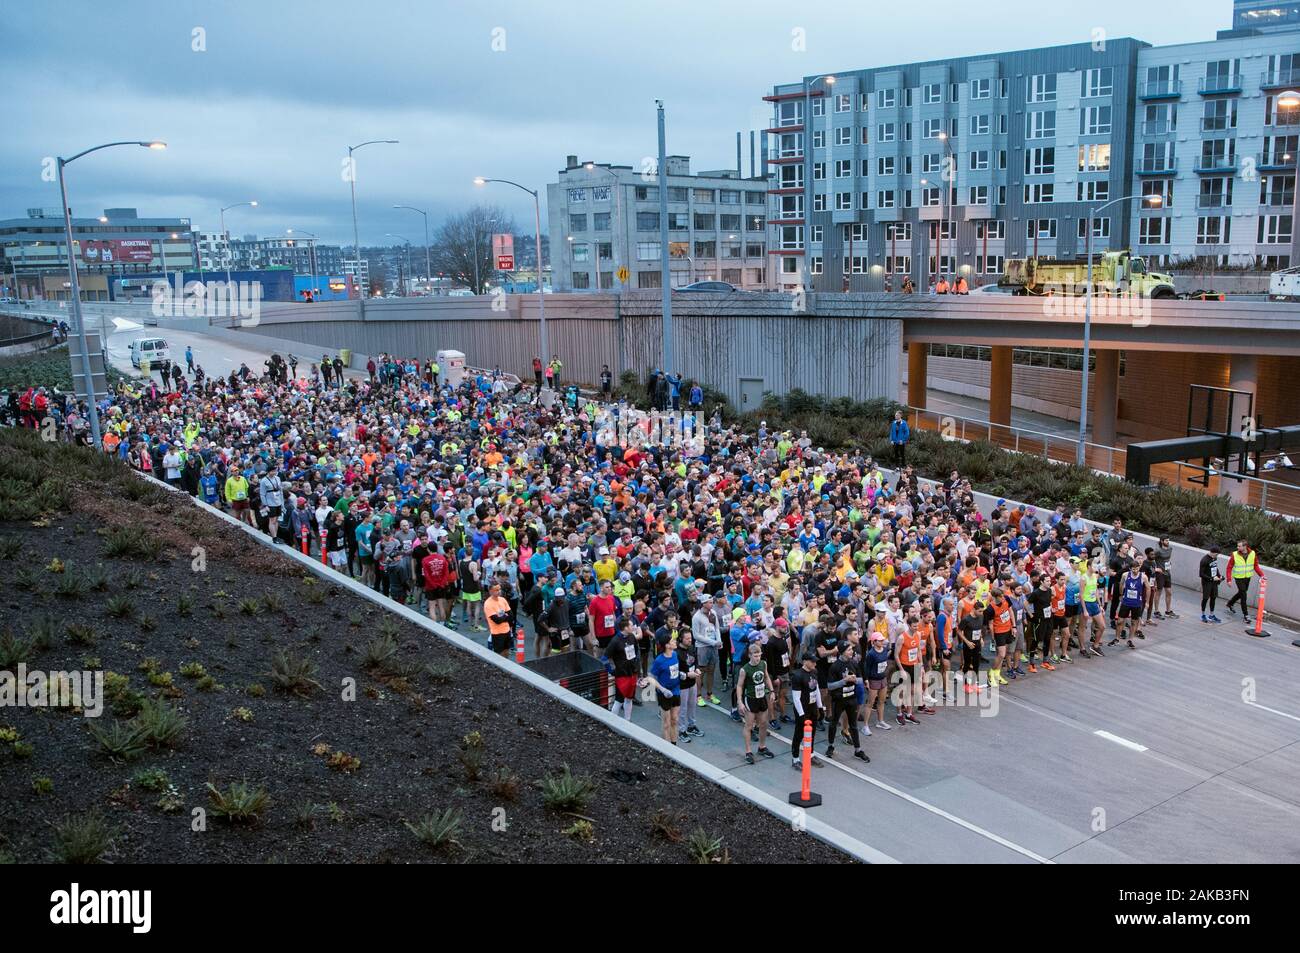 La vista de la gente sobre túnel al Viaducto 8k, Seattle, Washington, EE.UU. Foto de stock